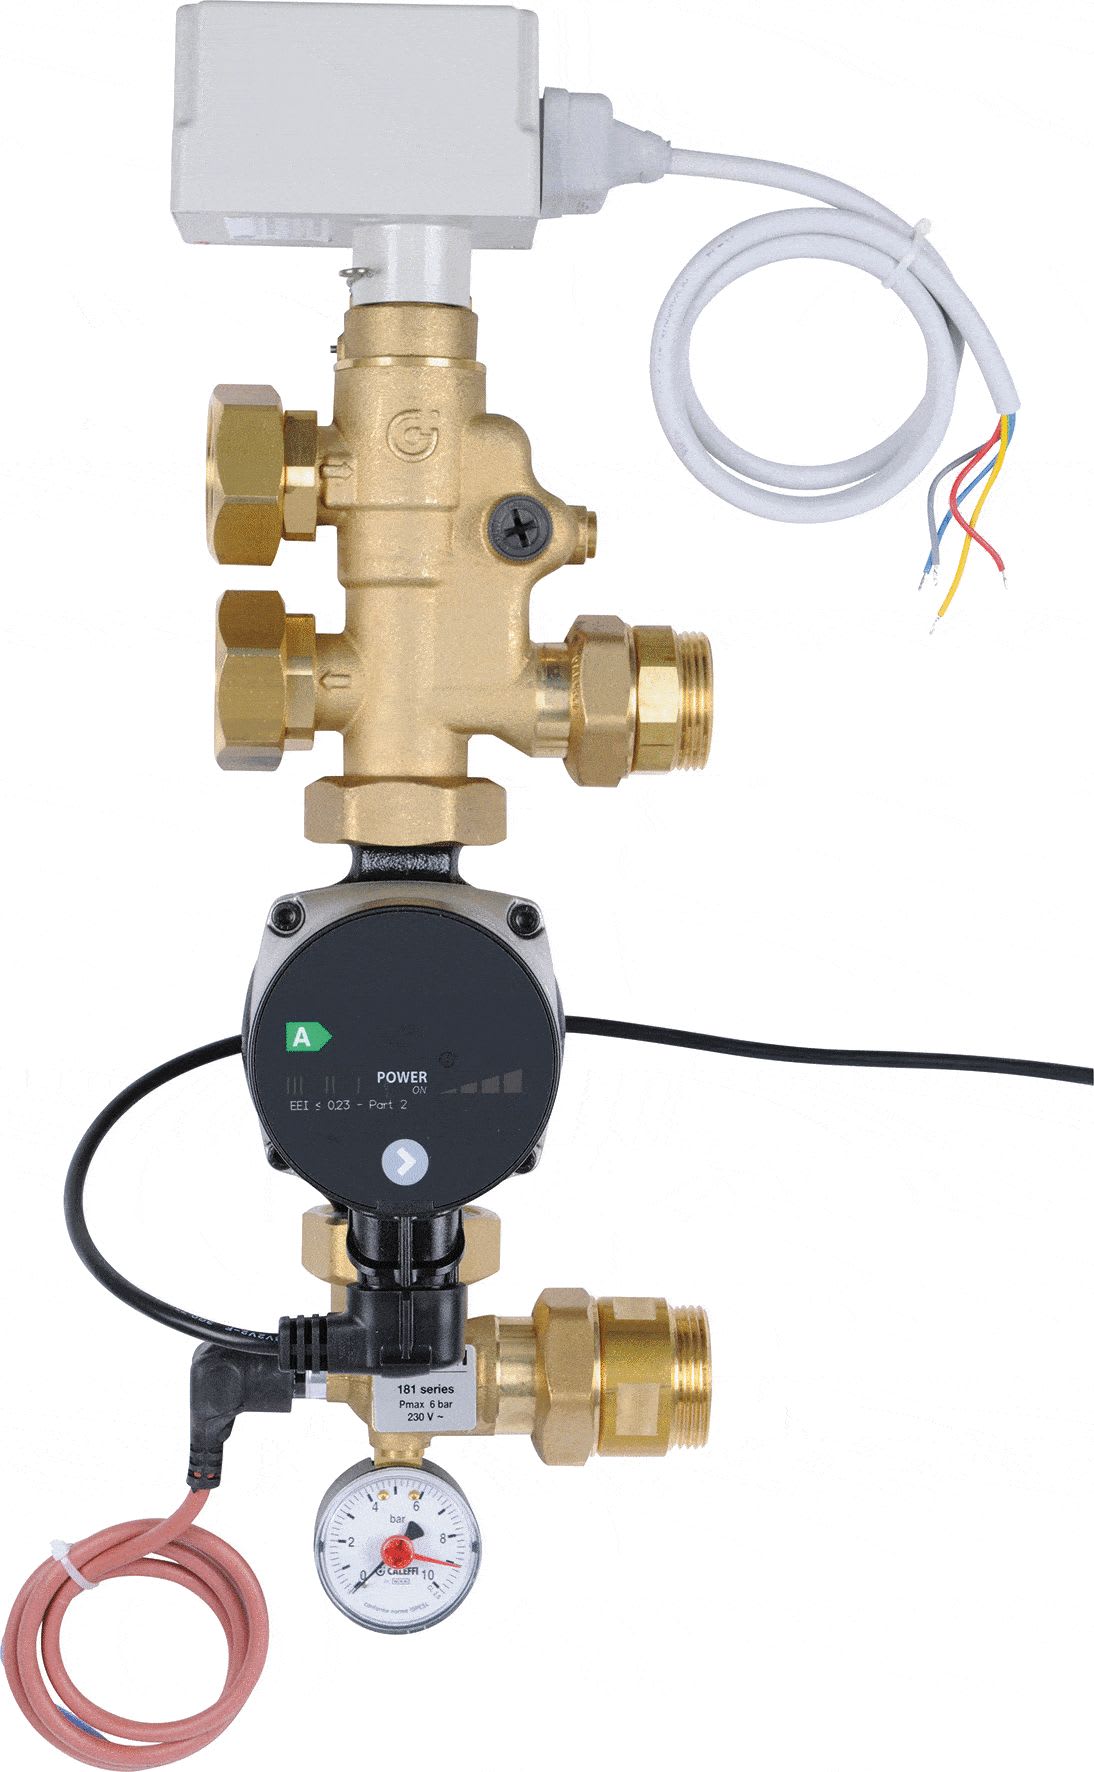 PB Tub - Groupe de Distribution Régulé Caleffi avec Vanne, Circulateur, Thermostat